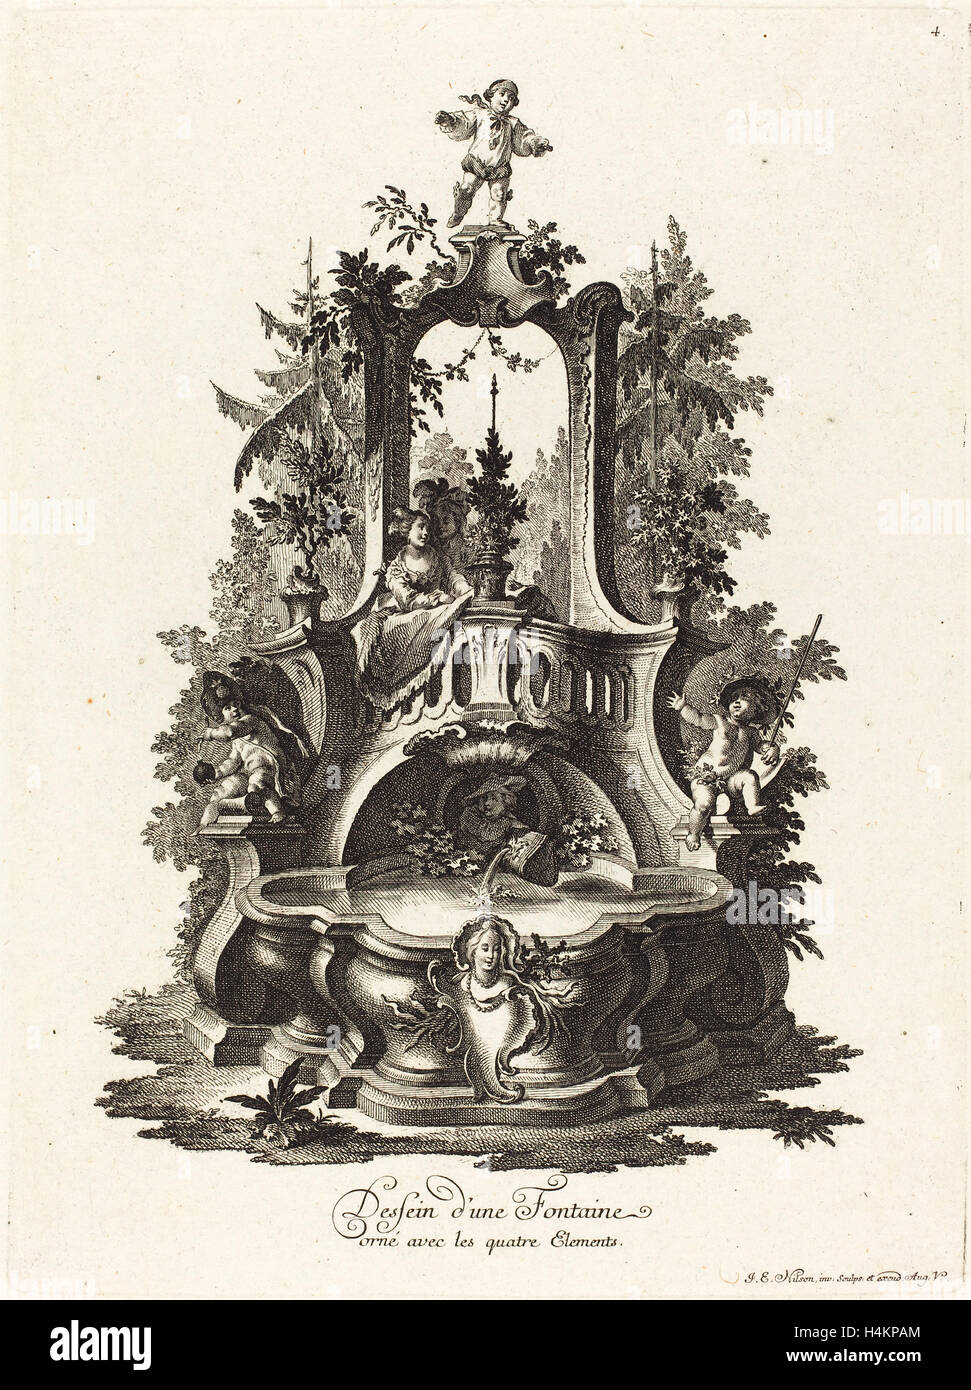 Johann Esaias Nilson (German, 1721 - 1788), Dessein d'une Fontaine orné avec les quatre Elements (Design for a Fountain) Stock Photo